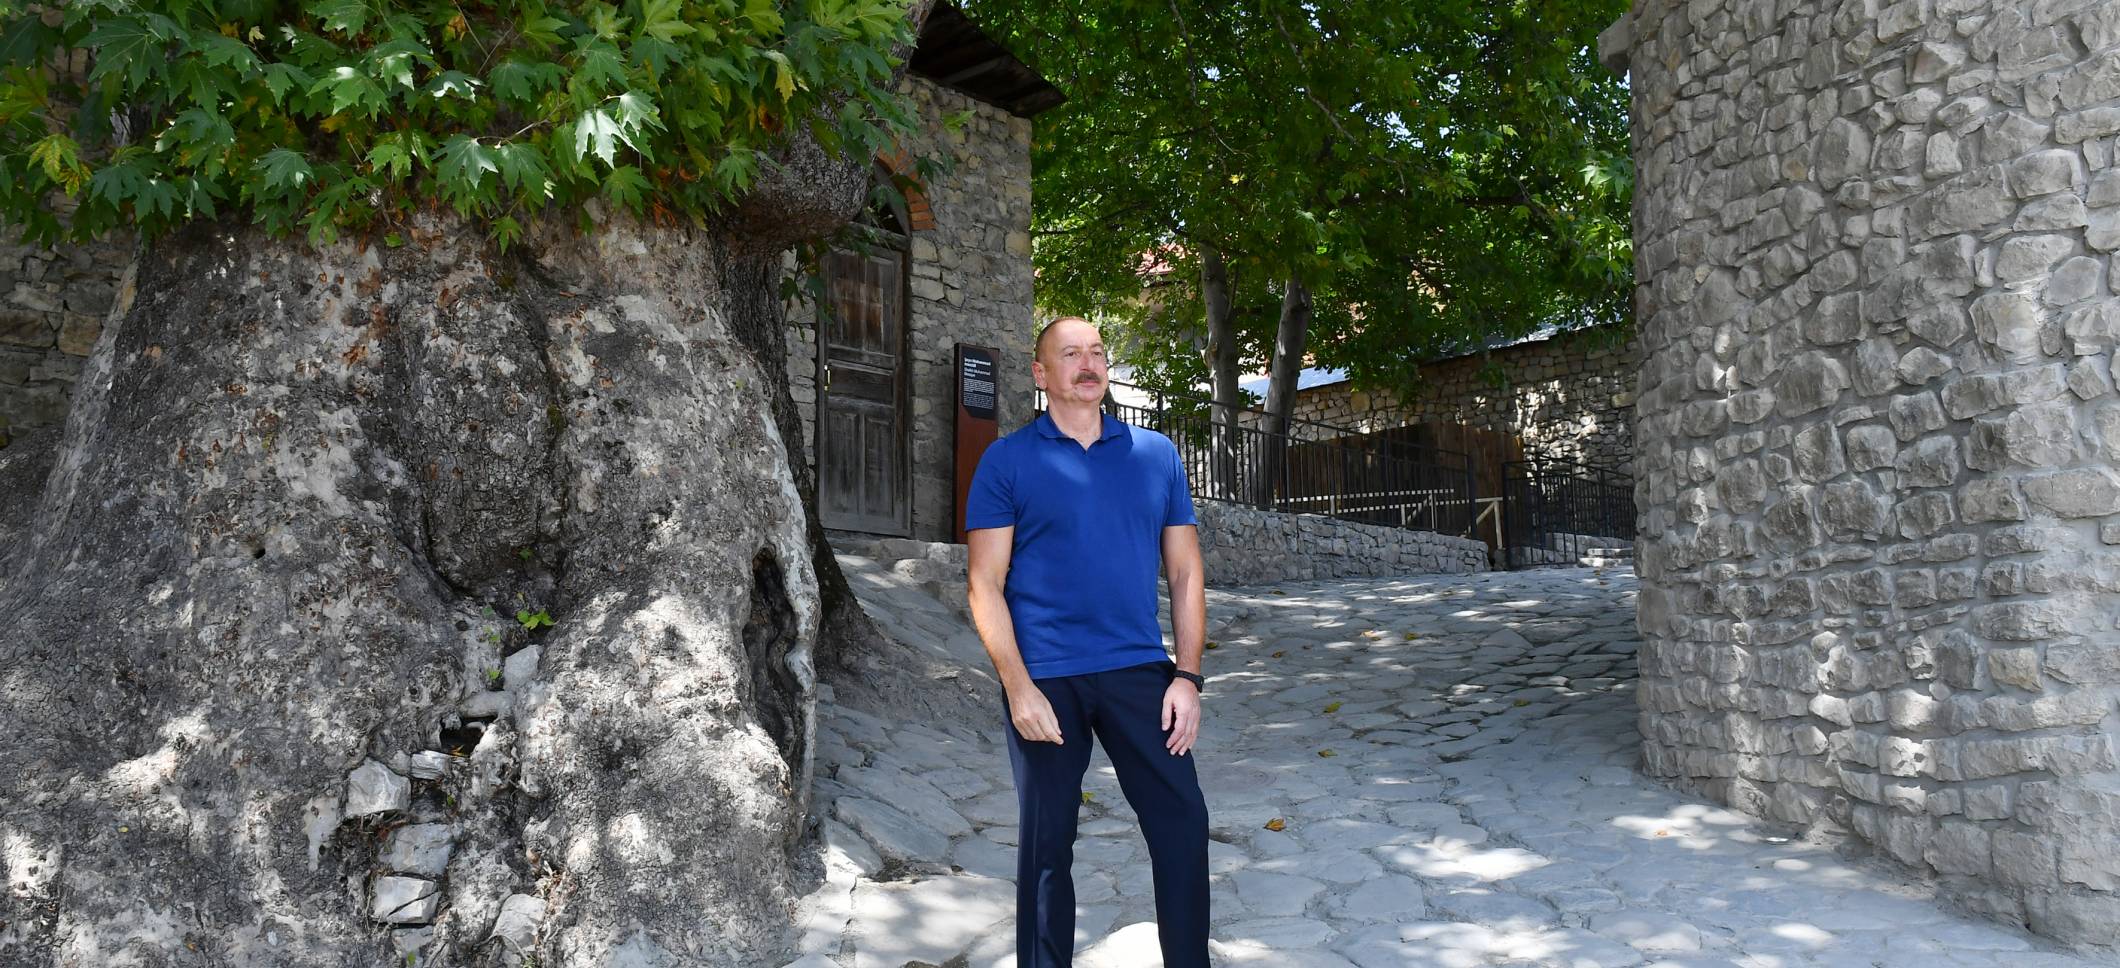 Ильхам Алиев дал интервью Азербайджанскому телевидению в поселке Басгал Исмаиллинского района